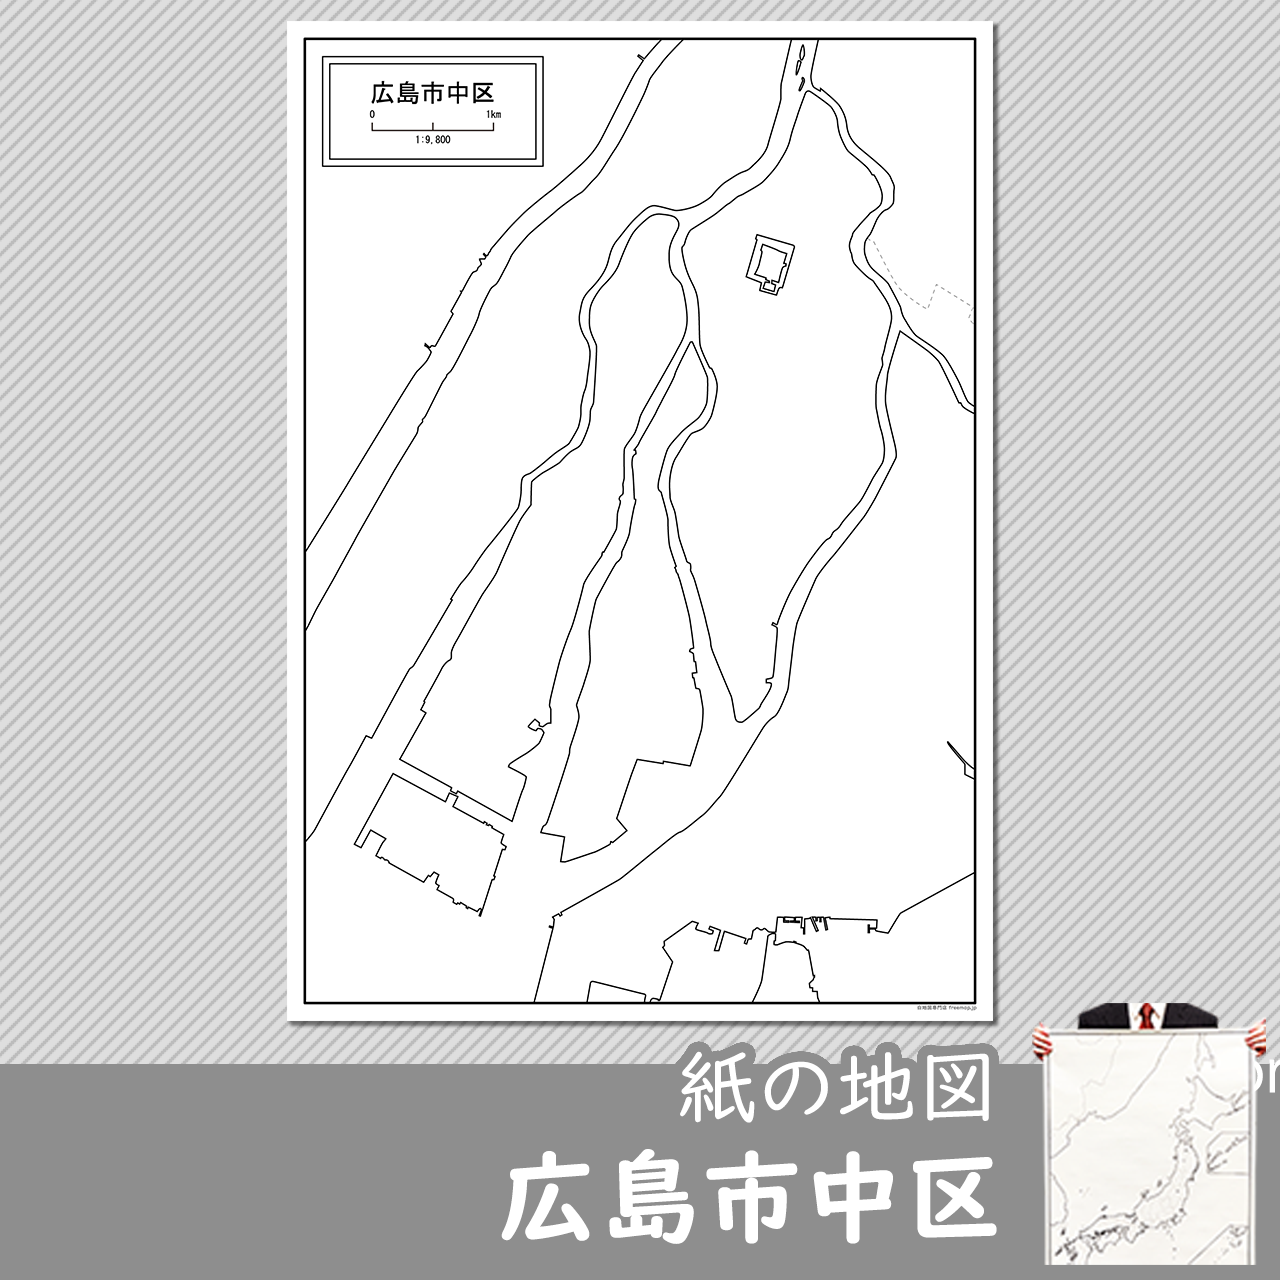 広島市中区の紙の白地図のサムネイル